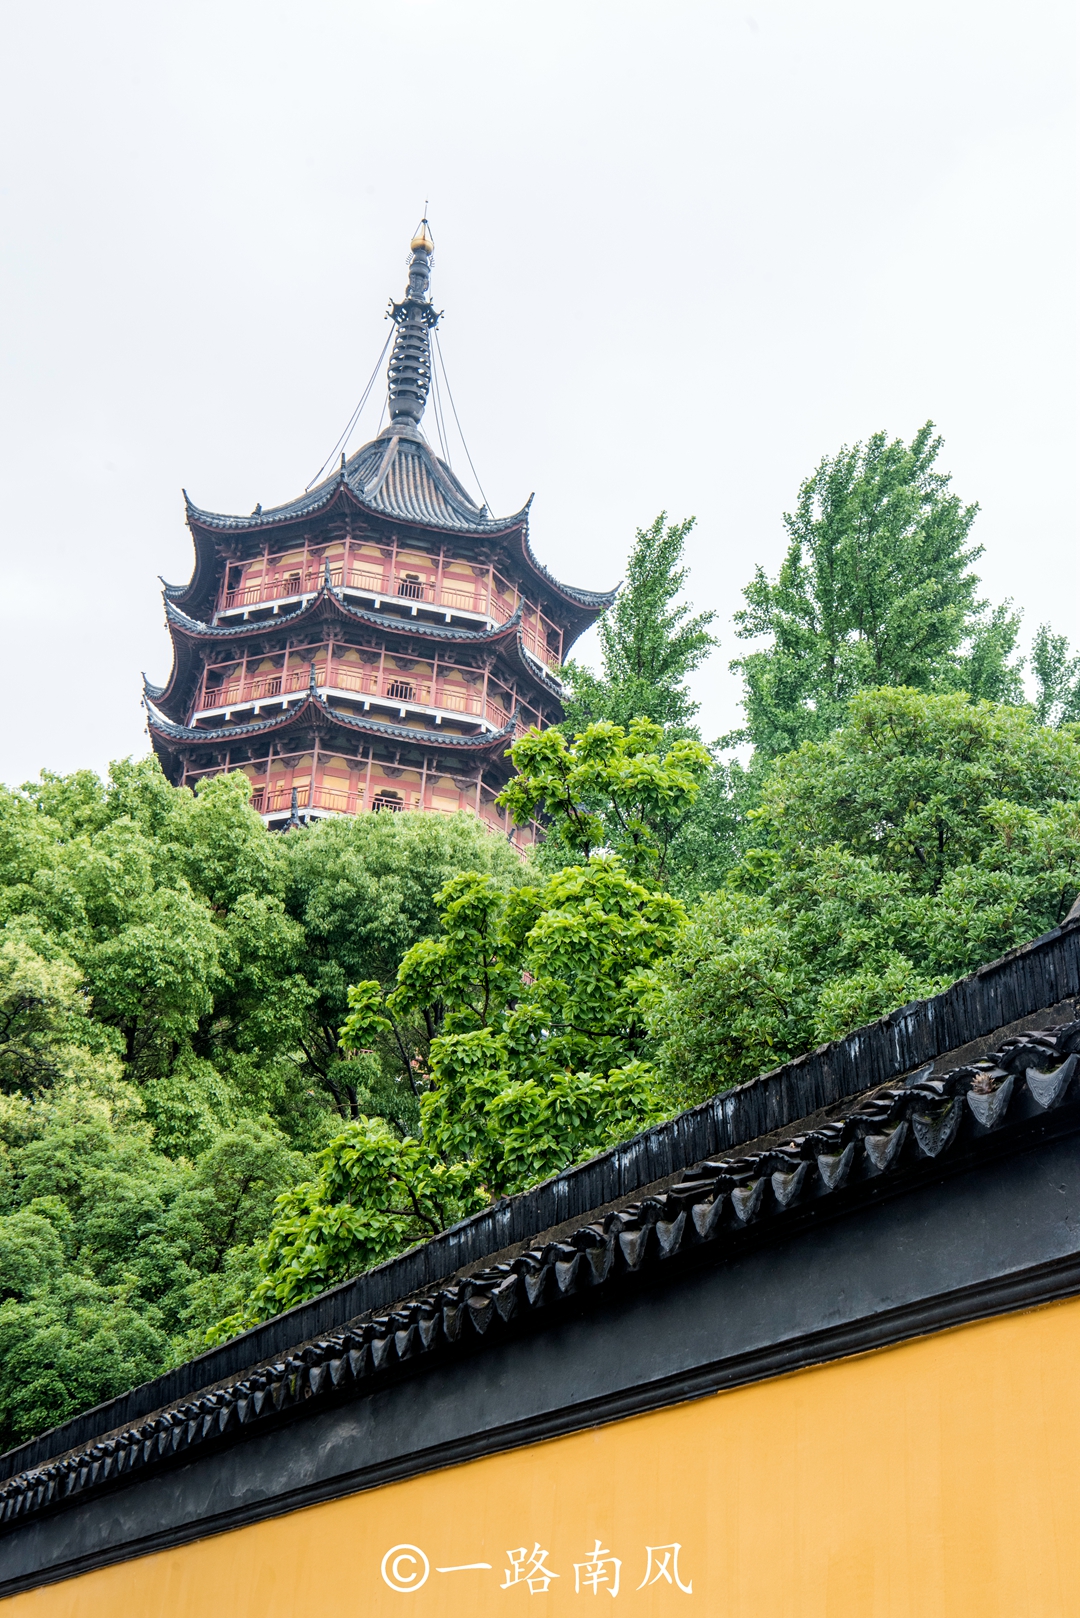 北寺塔旁边有座楠木观音殿,是苏州现存最完整的明代古建筑.